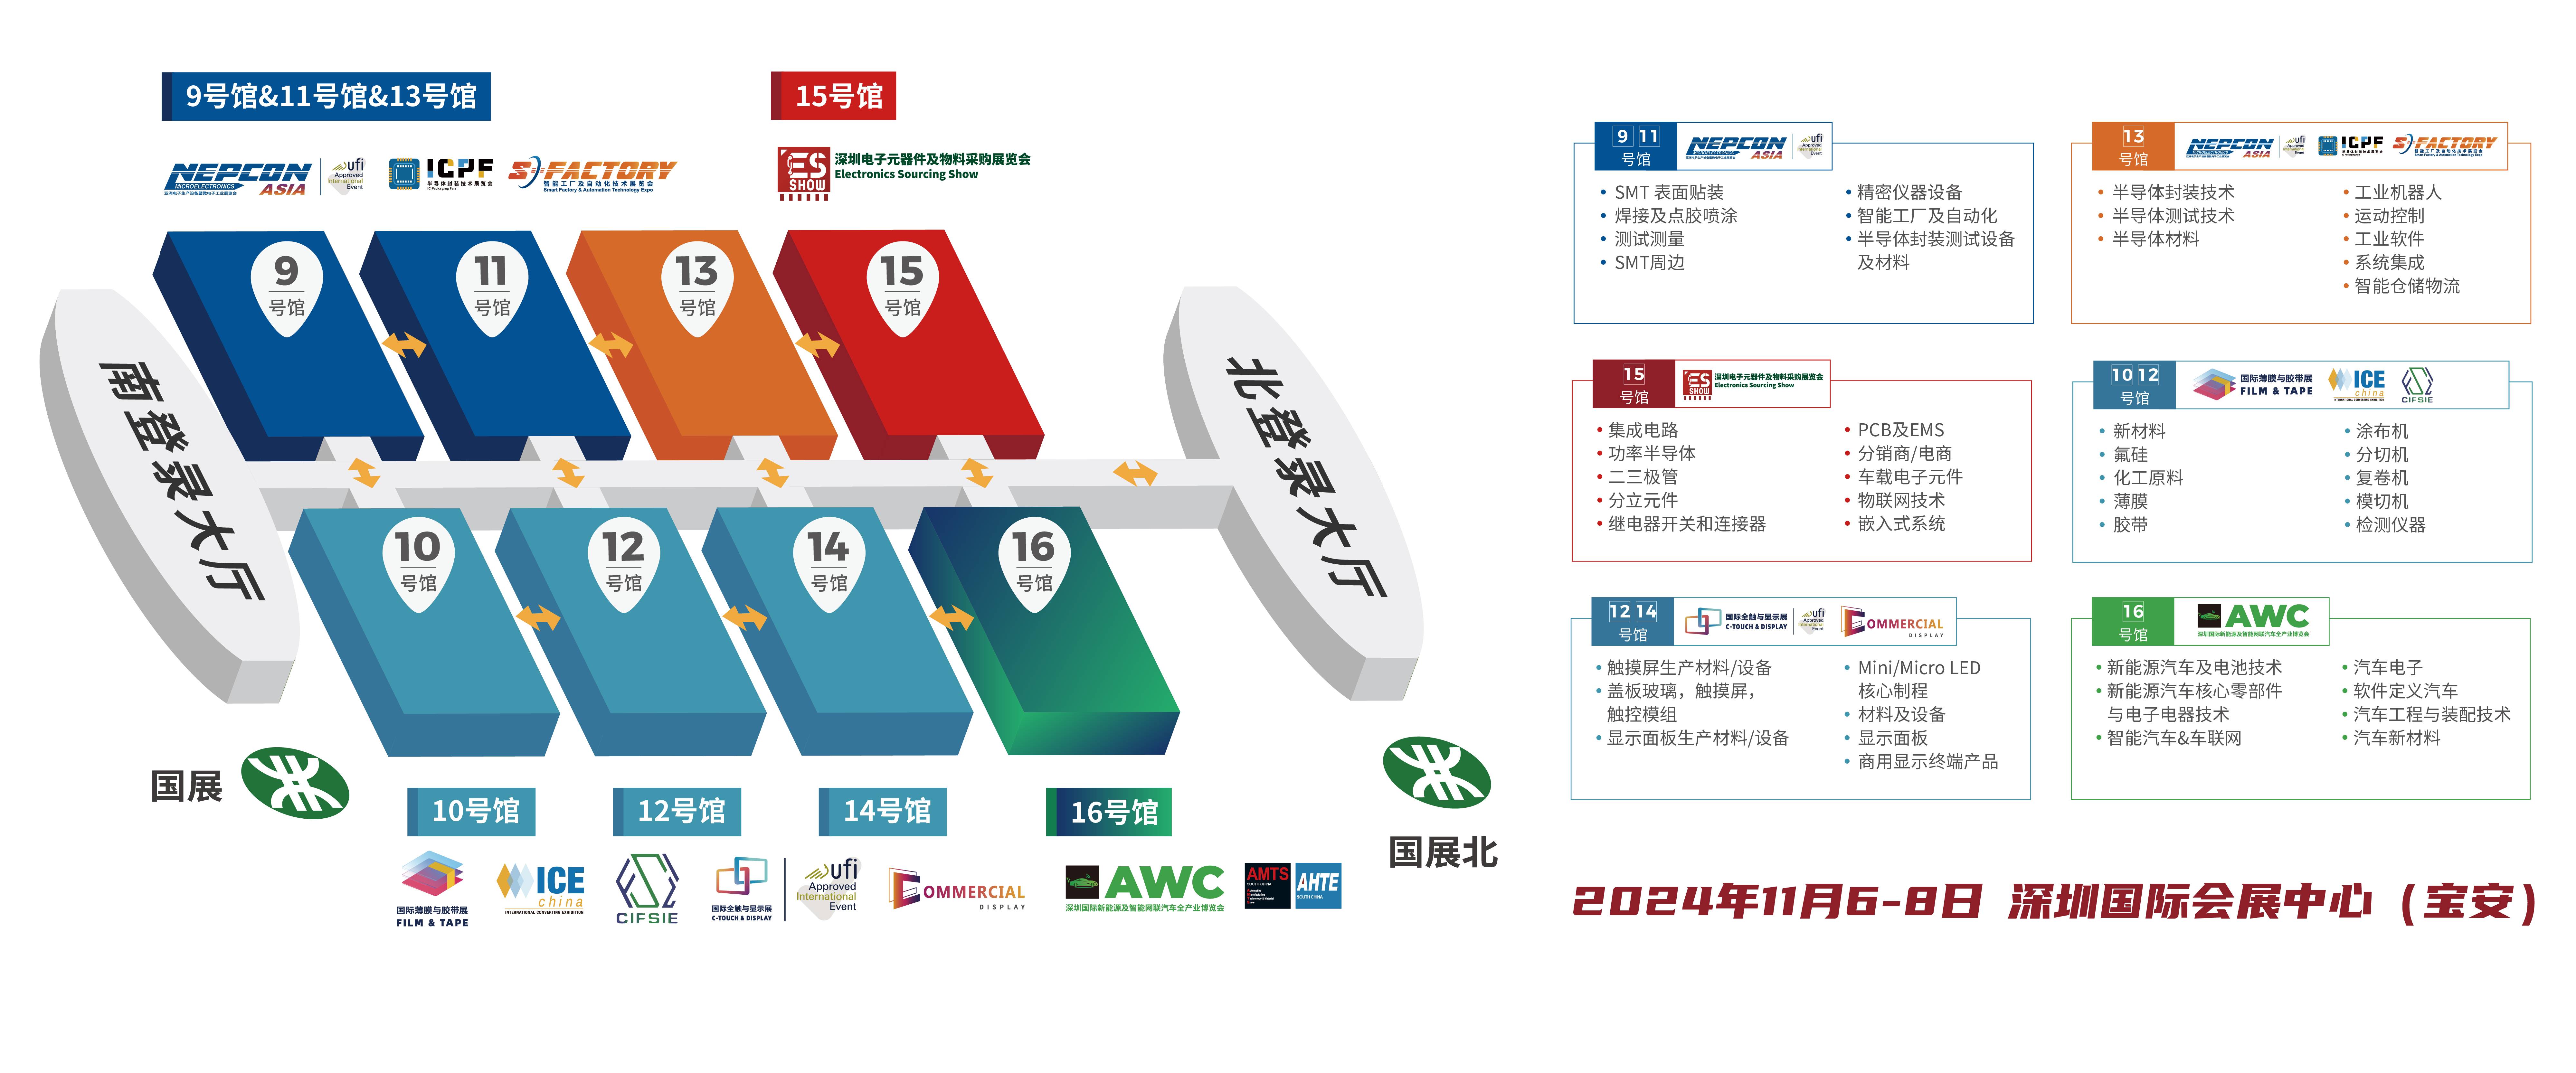 新能源汽车 深圳电子展 华南电子展 中国电子展 元器件展会